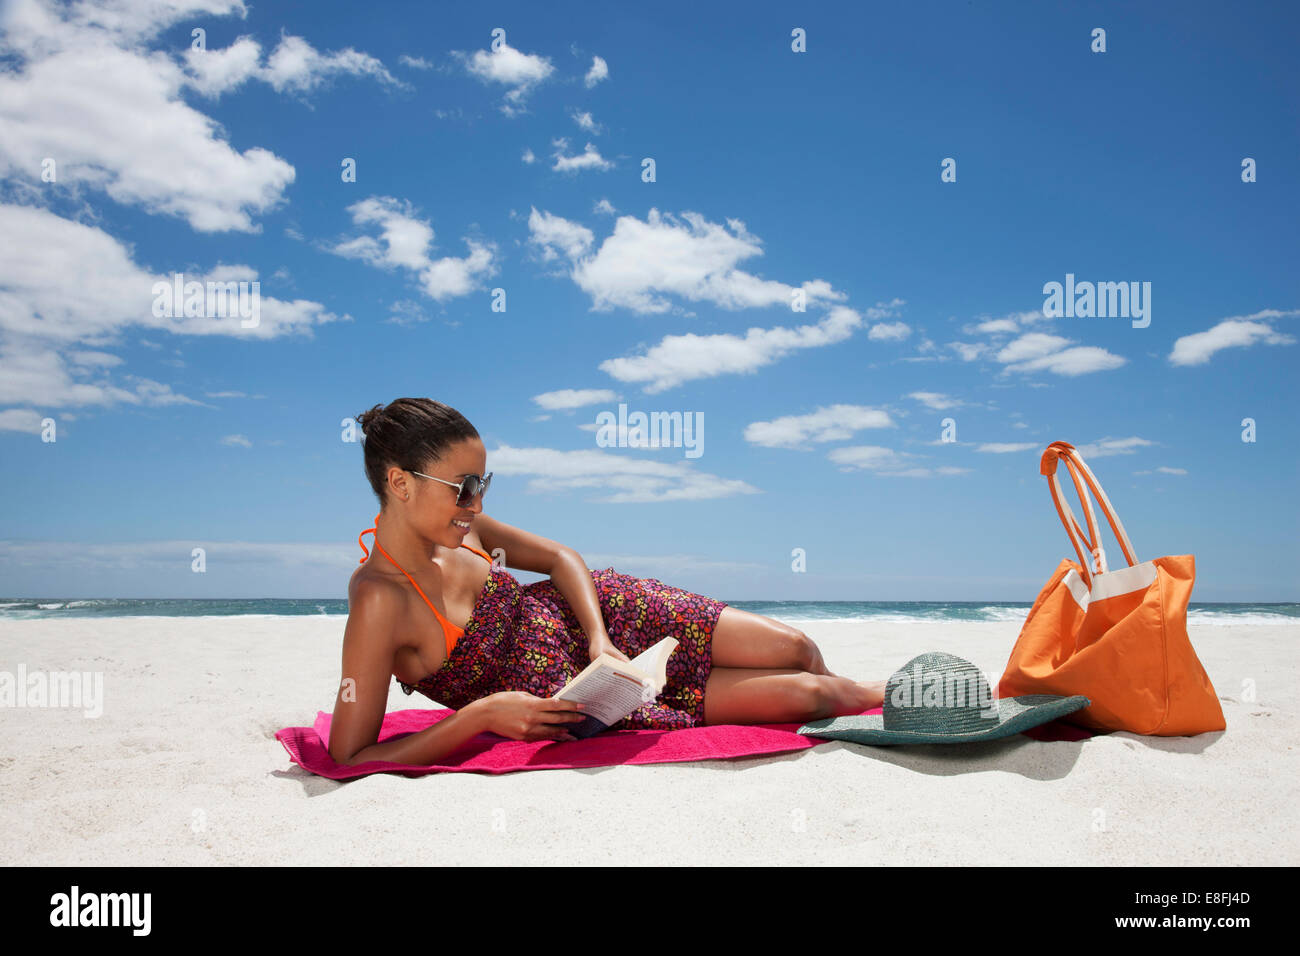 Femme couché sur la plage de lecture, le Cap, le Cap occidental, Afrique du Sud Banque D'Images